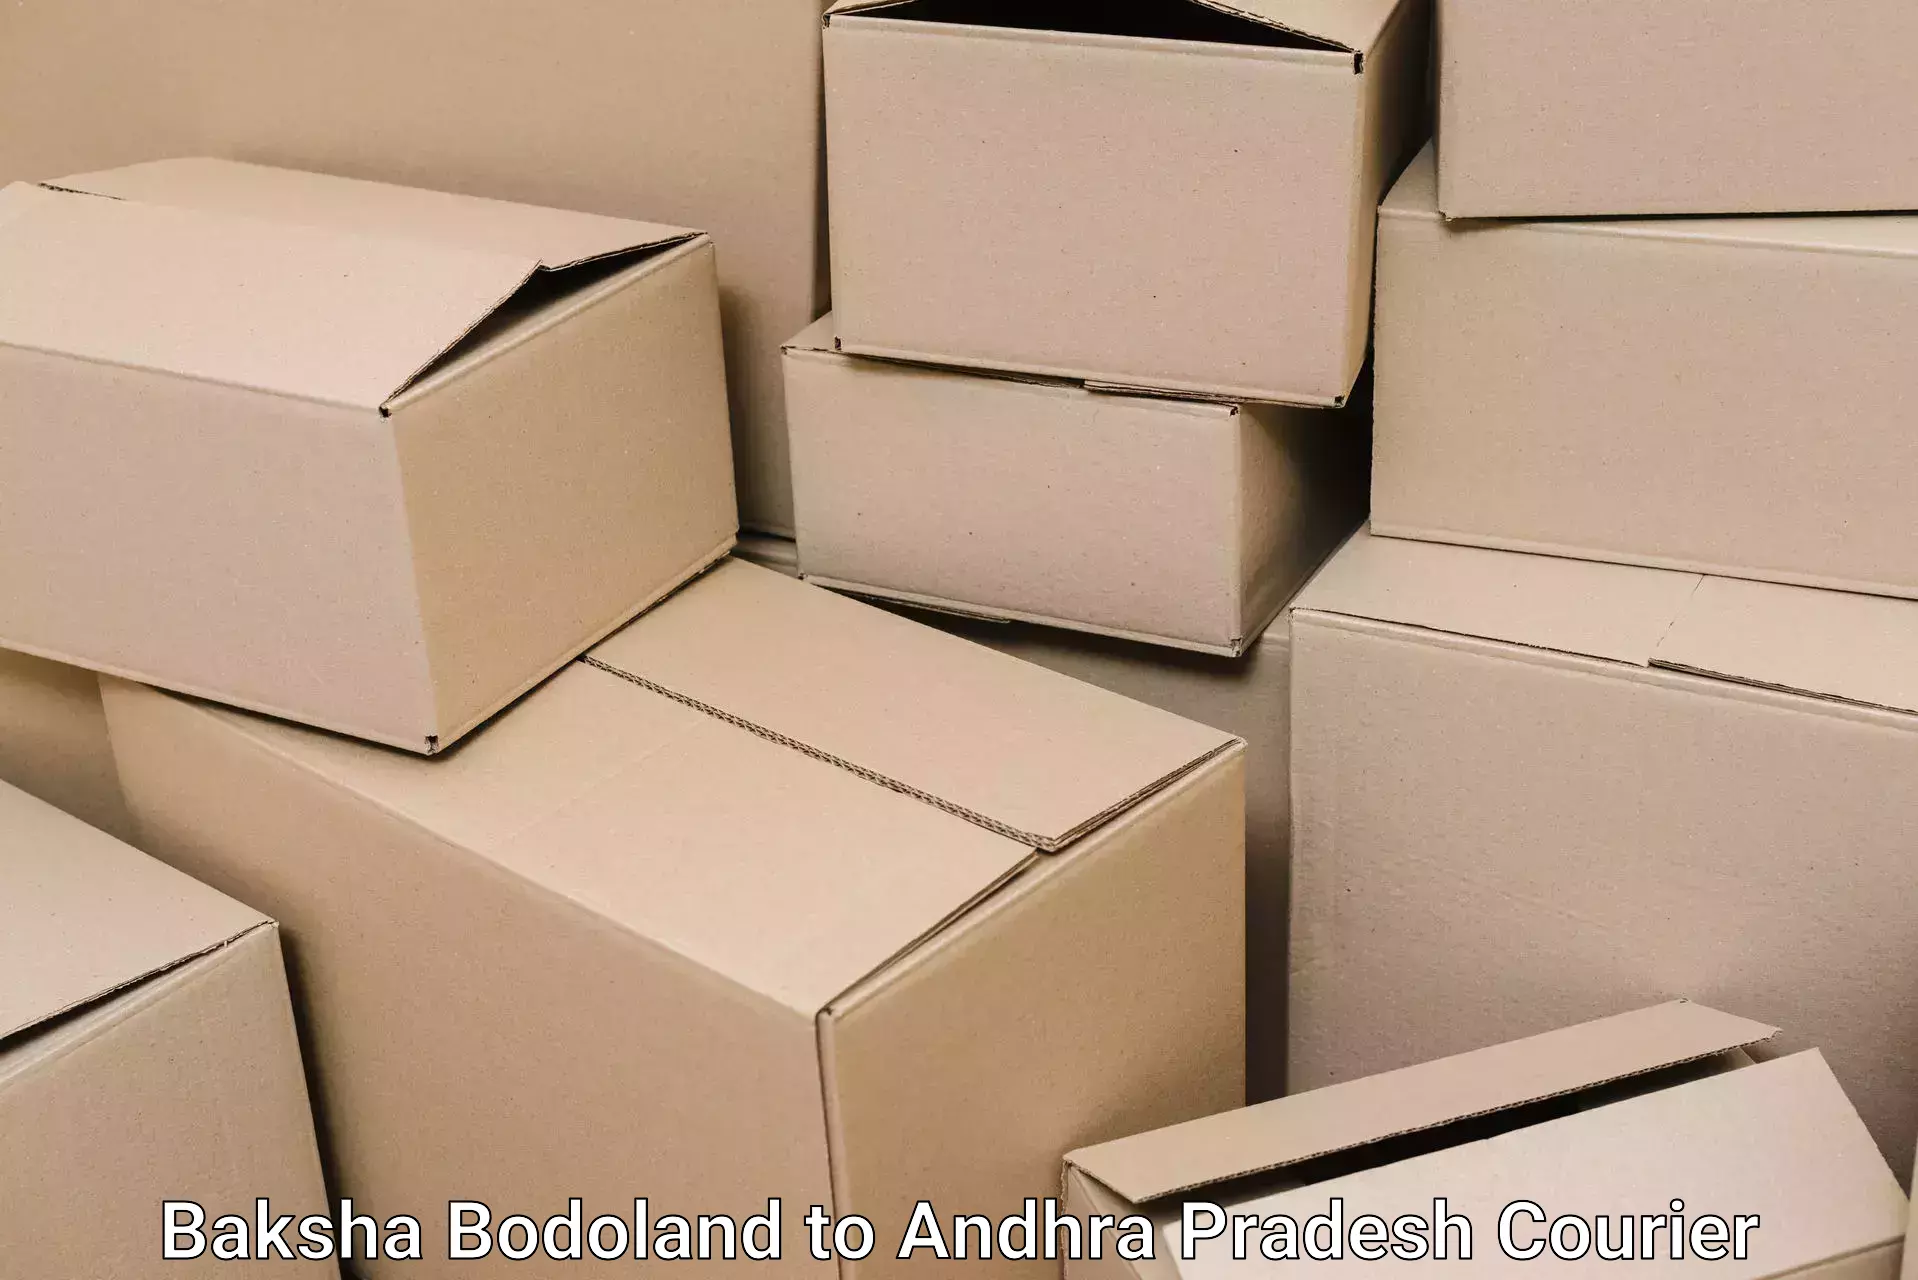 Furniture transport and storage Baksha Bodoland to Markapur